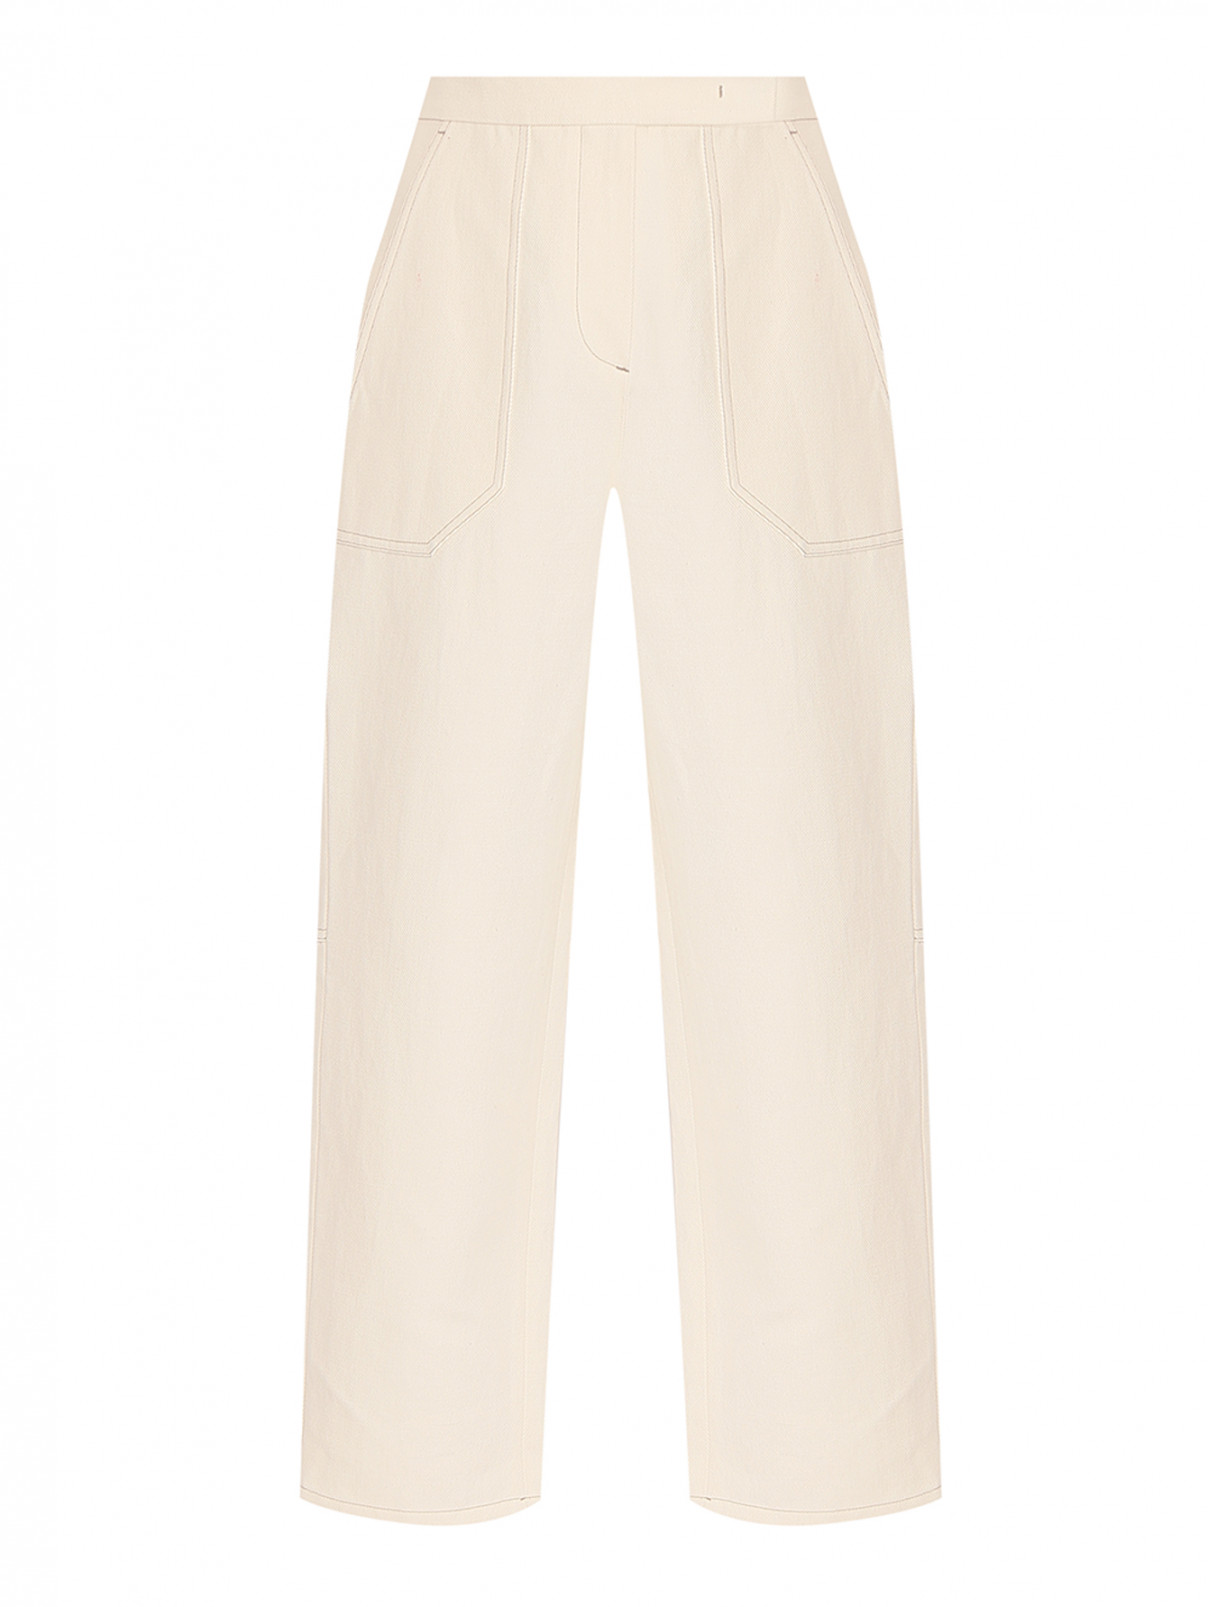 Укороченные брюки из хлопка и льна с карманами Max Mara  –  Общий вид  – Цвет:  Бежевый